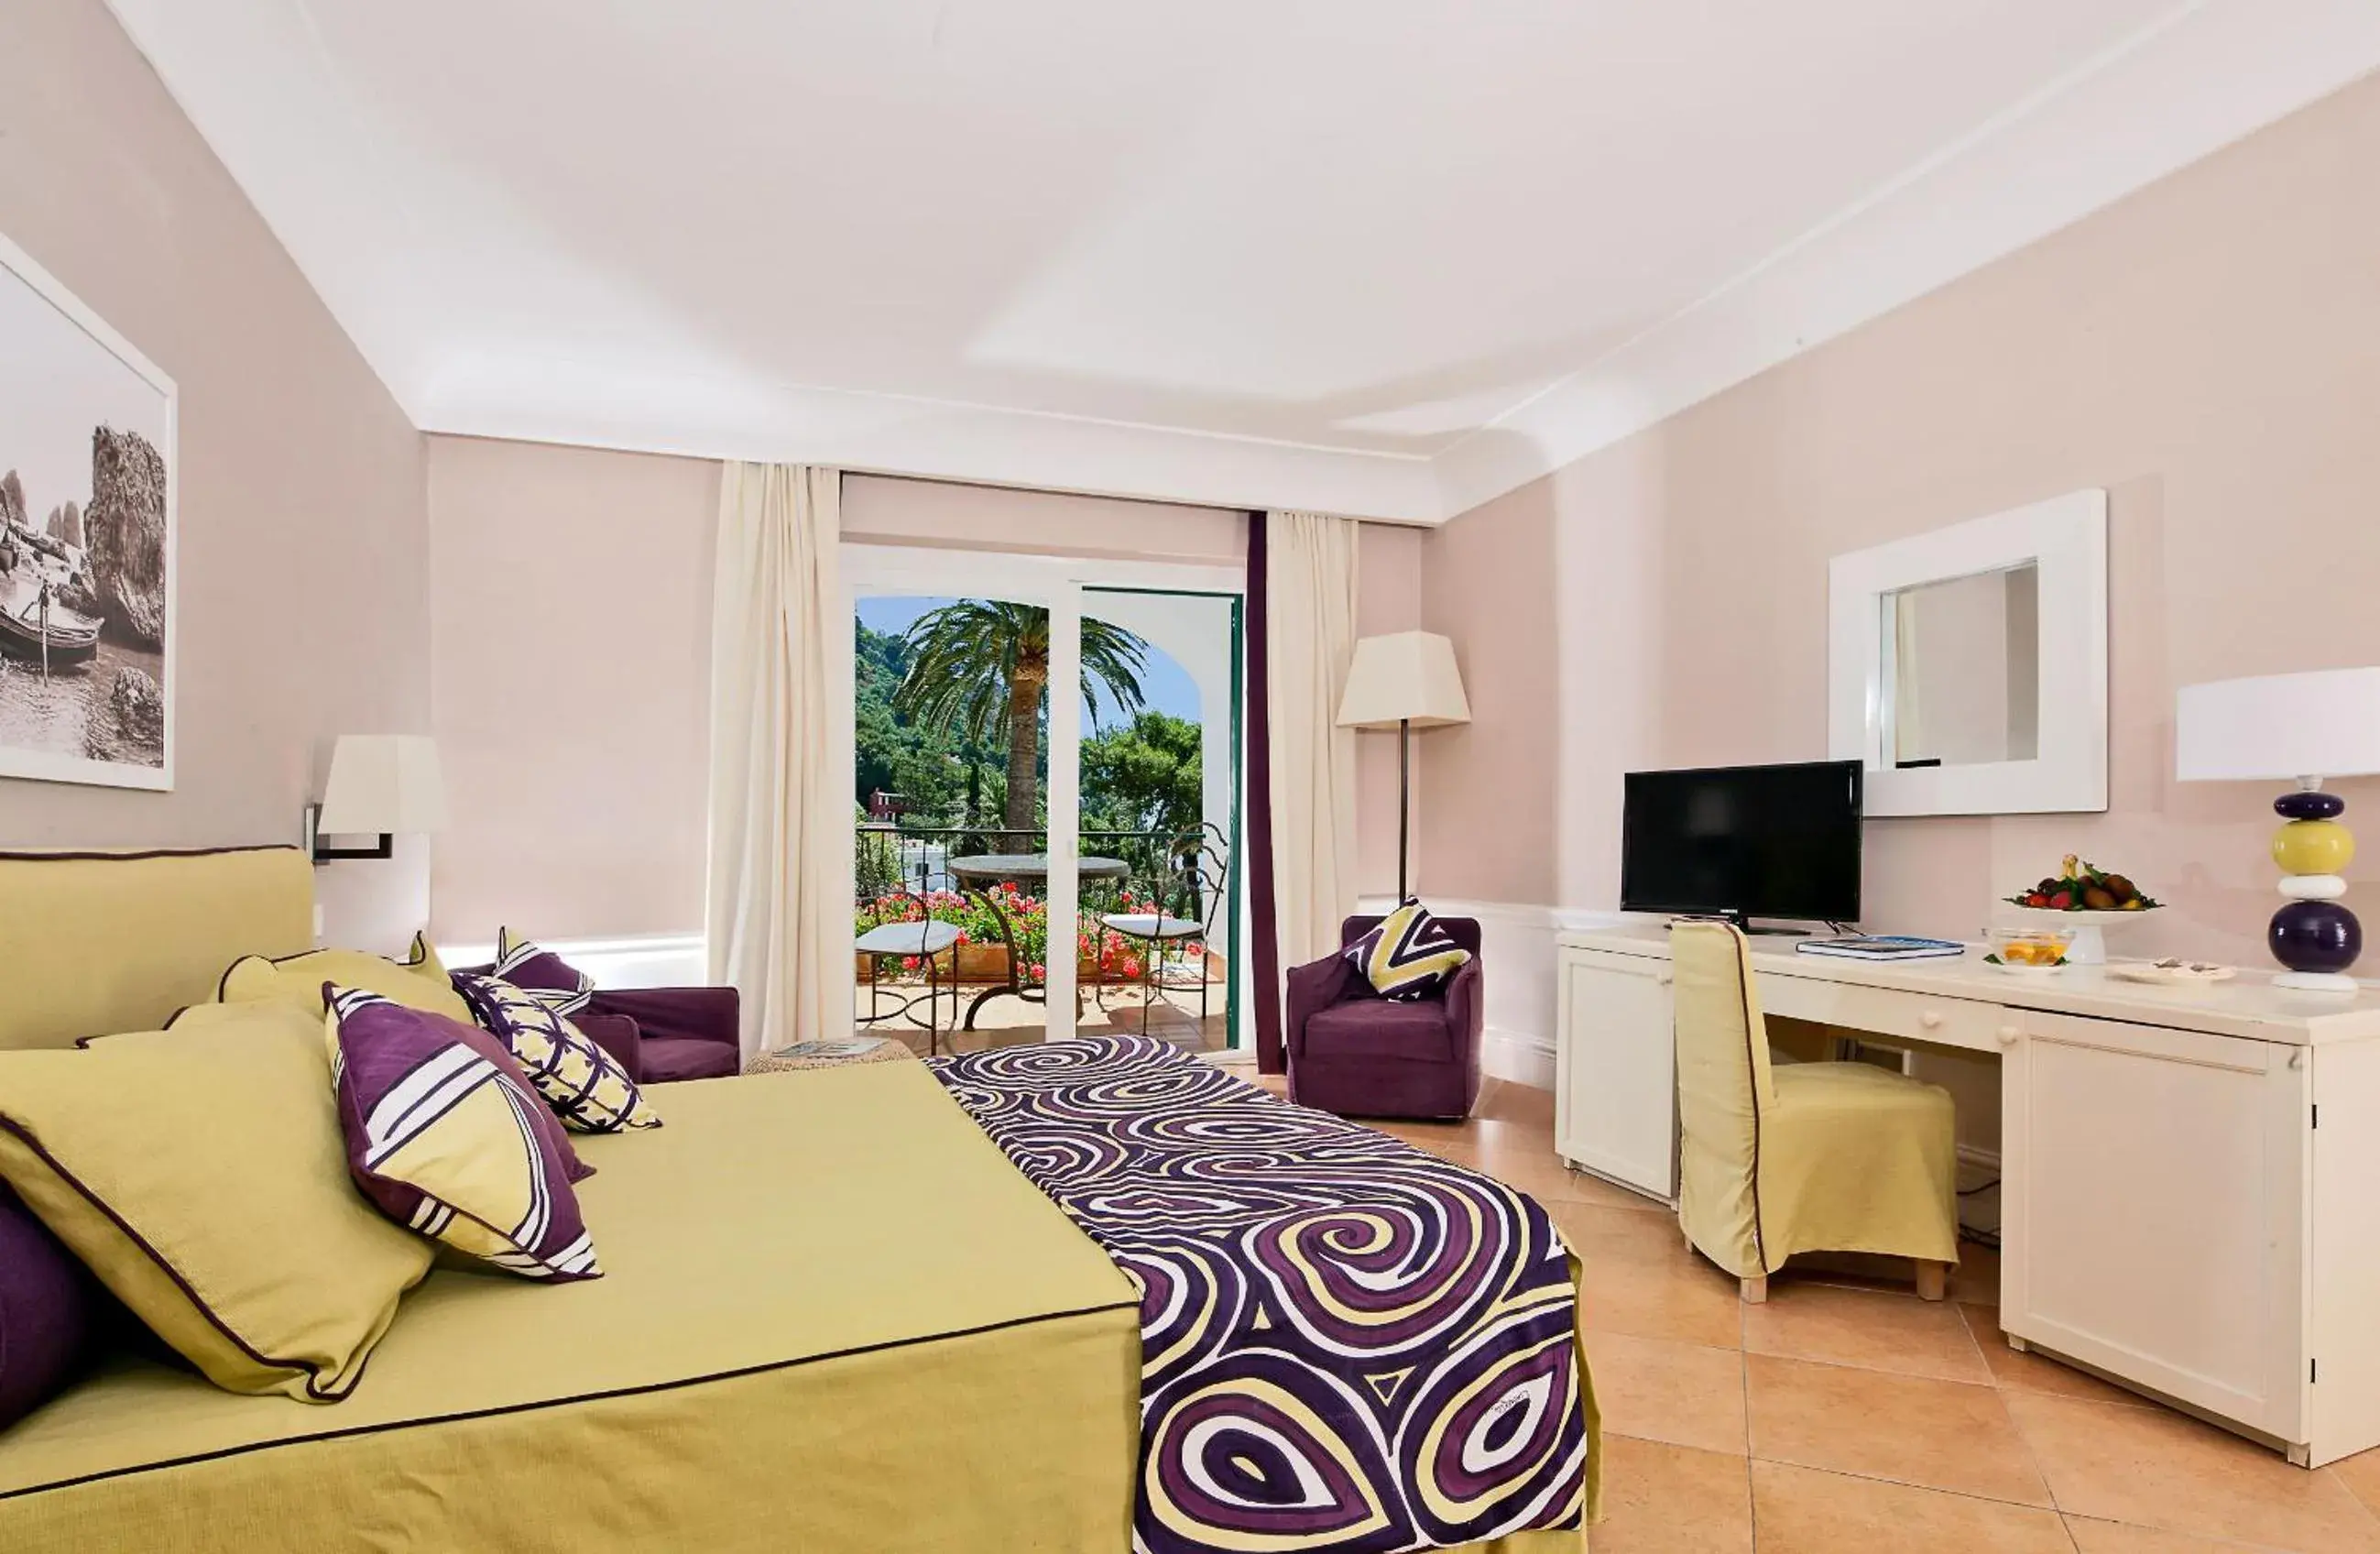 Photo of the whole room in Hotel Della Piccola Marina